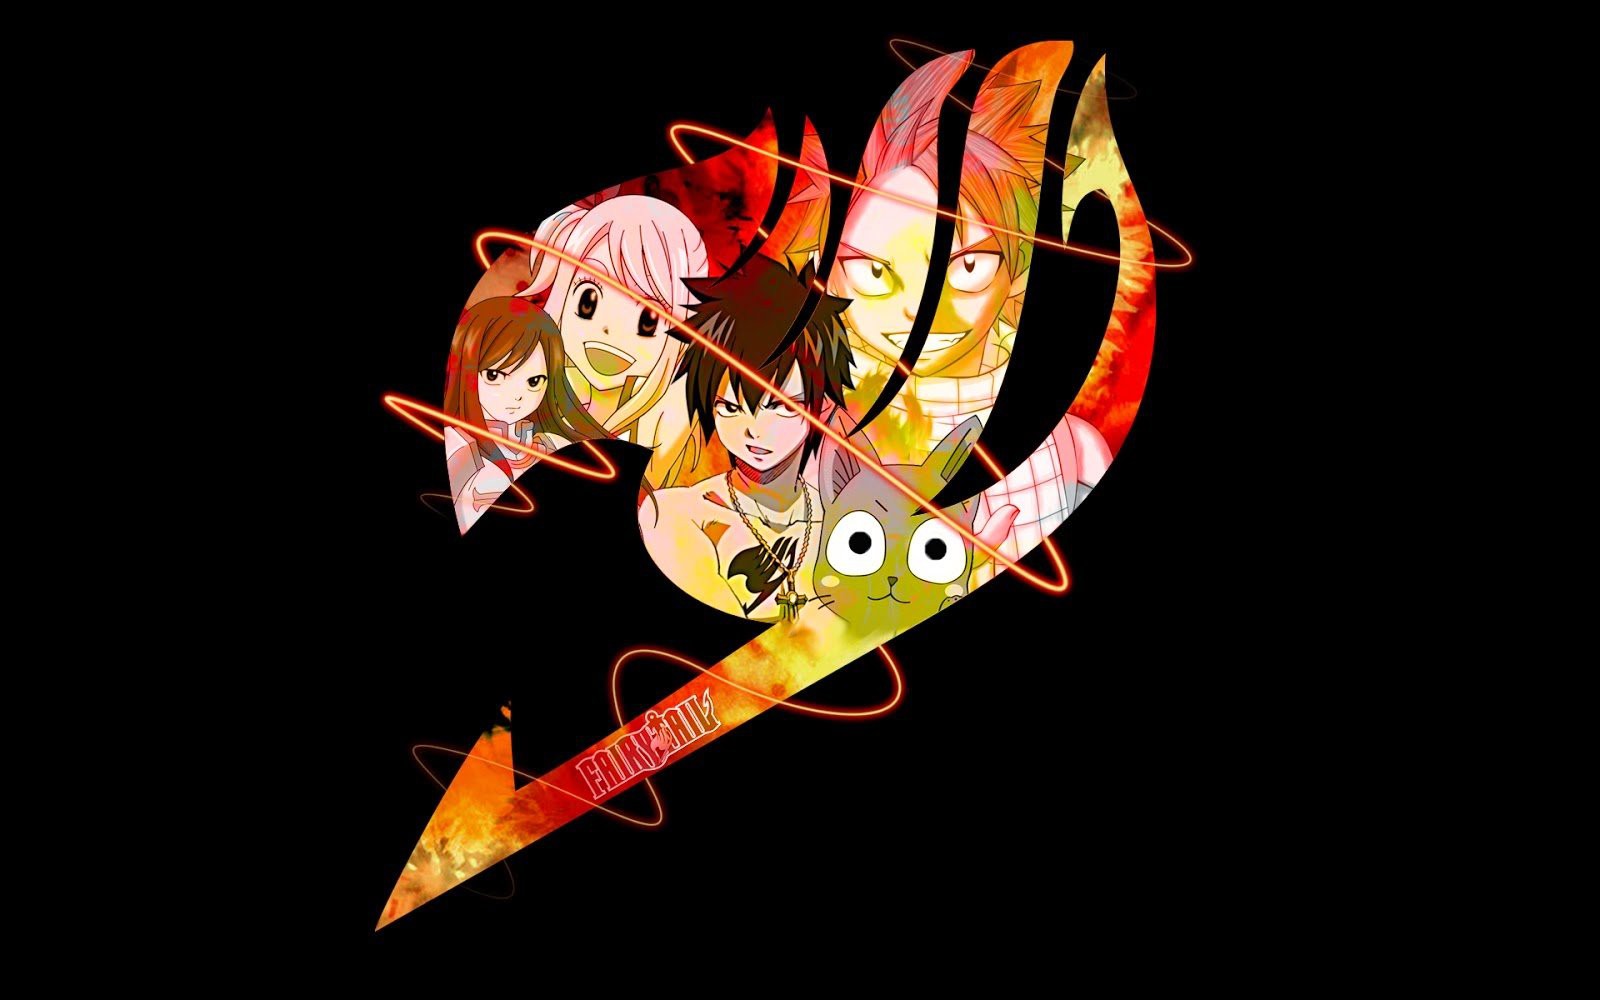 Hình nền : hình minh họa, Anime, thanh kiếm, Fairy Tail, Hồng, NGHỆ THUẬT, Hình  nền máy tính, Mangaka, Erza scarlet, Mage 1920x1080 - wallhaven - 579678 - Hình  nền đẹp hd - WallHere